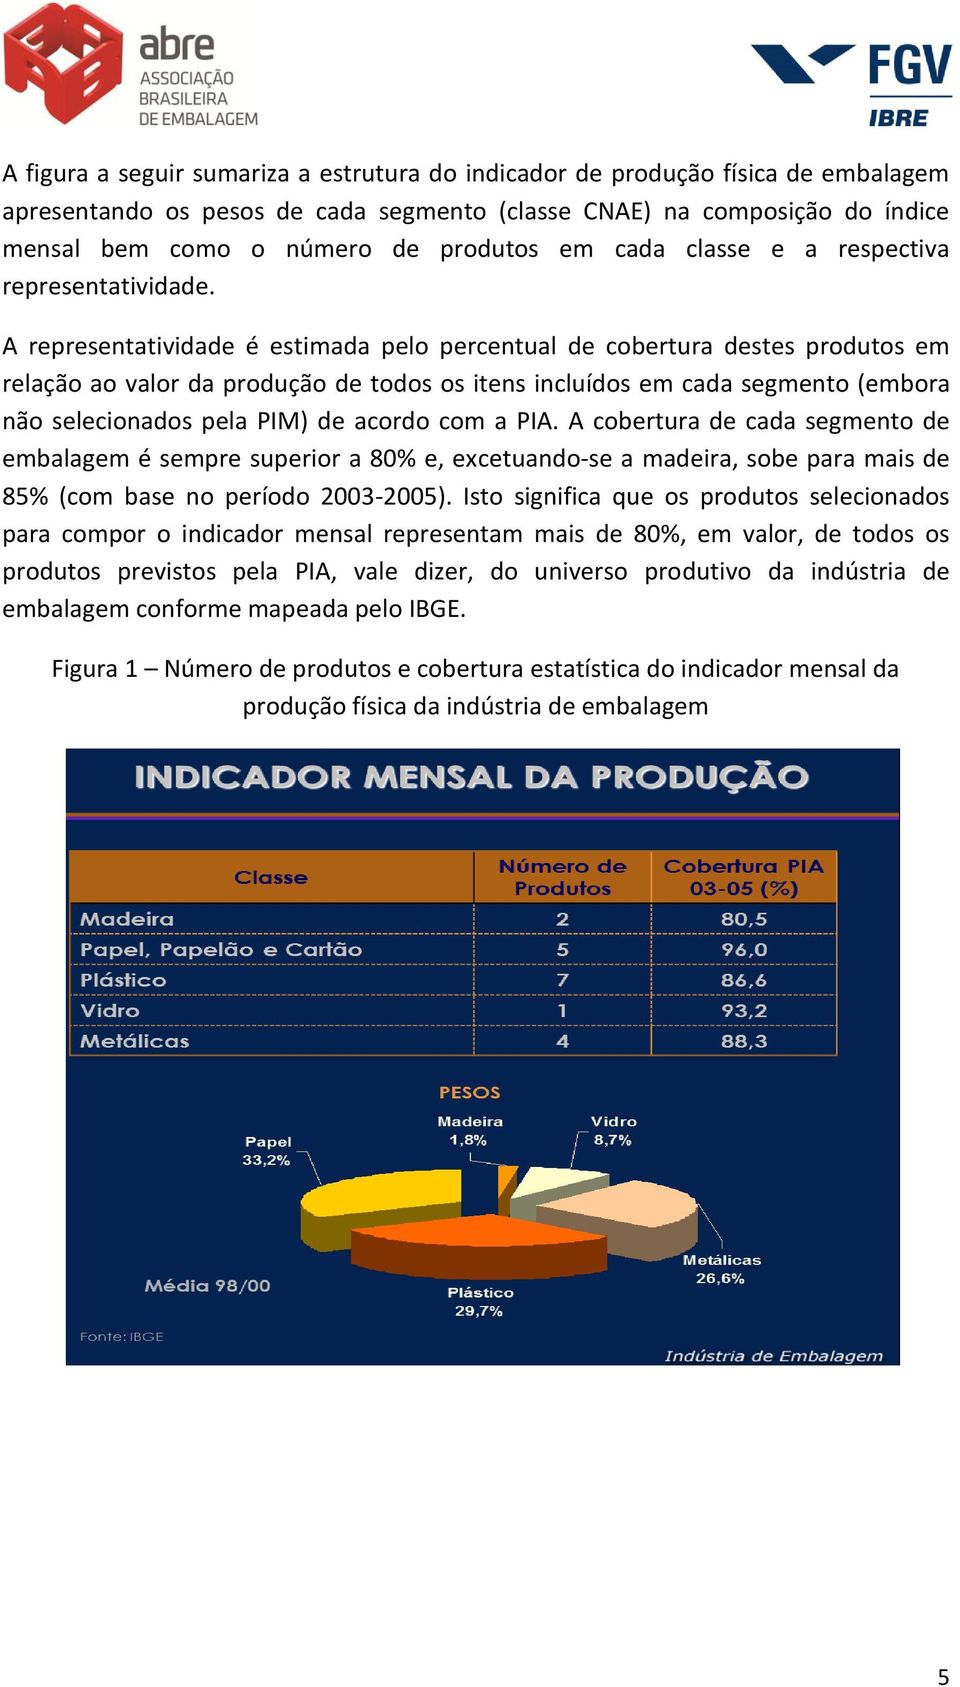 A representatividade é estimada pelo percentual de cobertura destes produtos em relação ao valor da produção de todos os itens incluídos em cada segmento (embora não selecionados pela PIM) de acordo